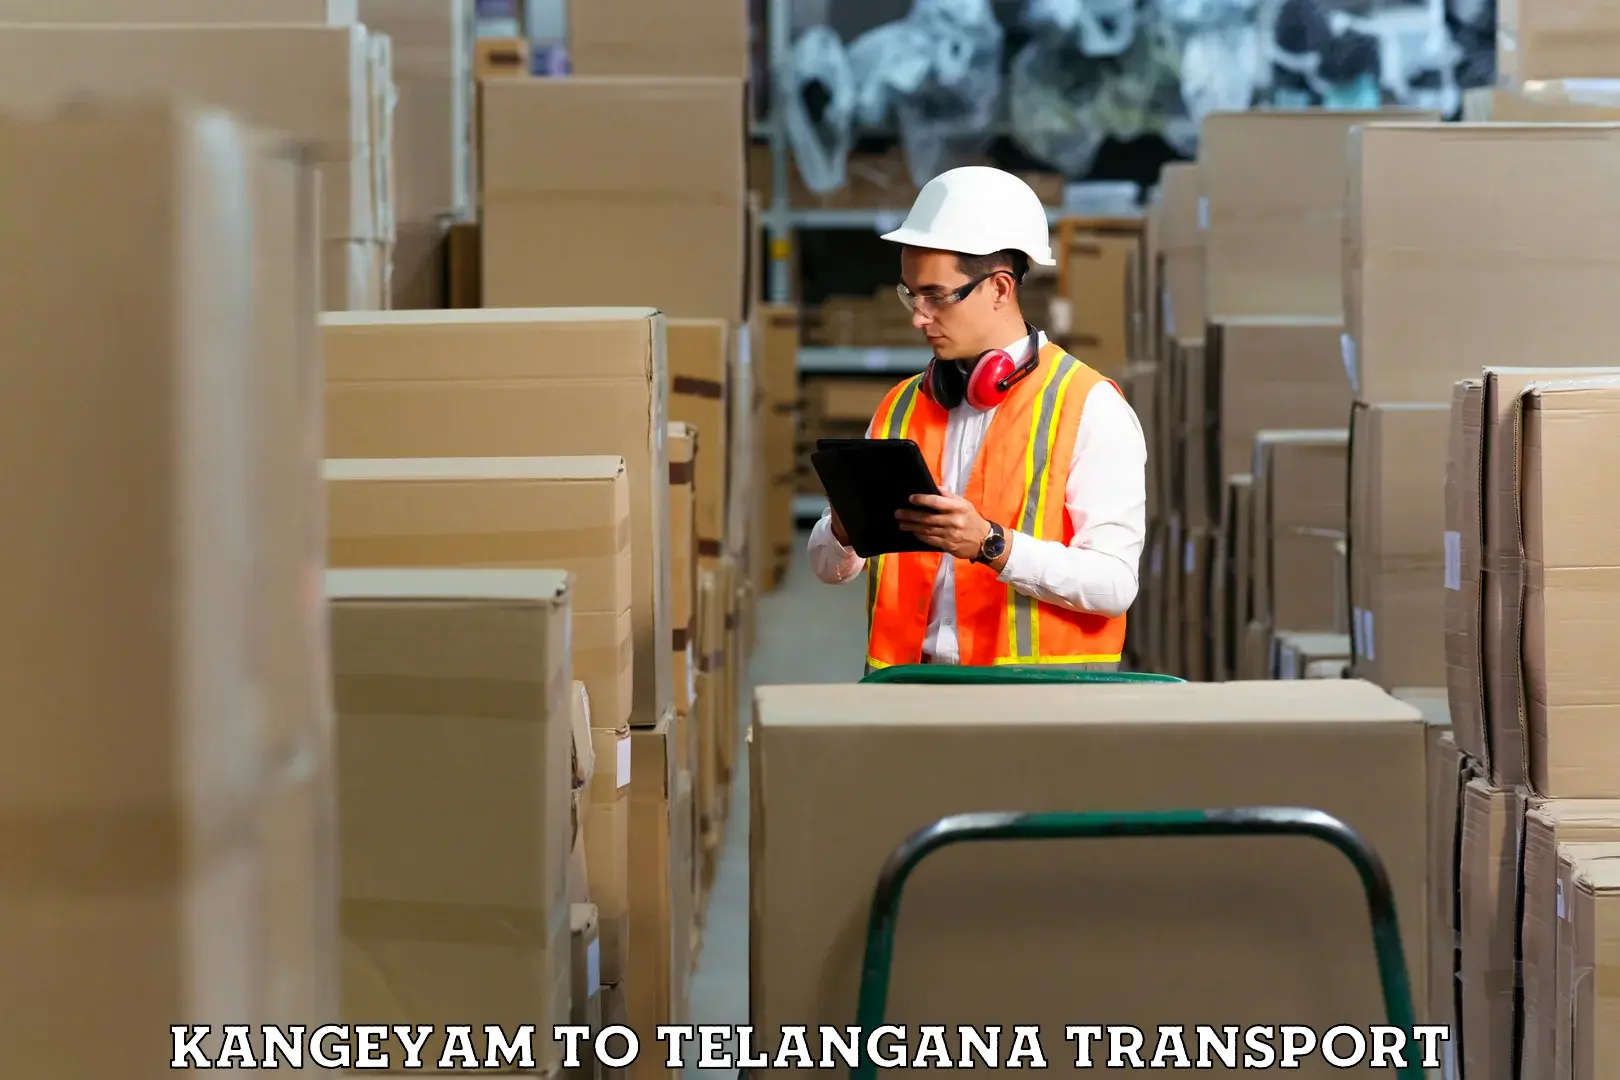 Daily parcel service transport Kangeyam to Telangana